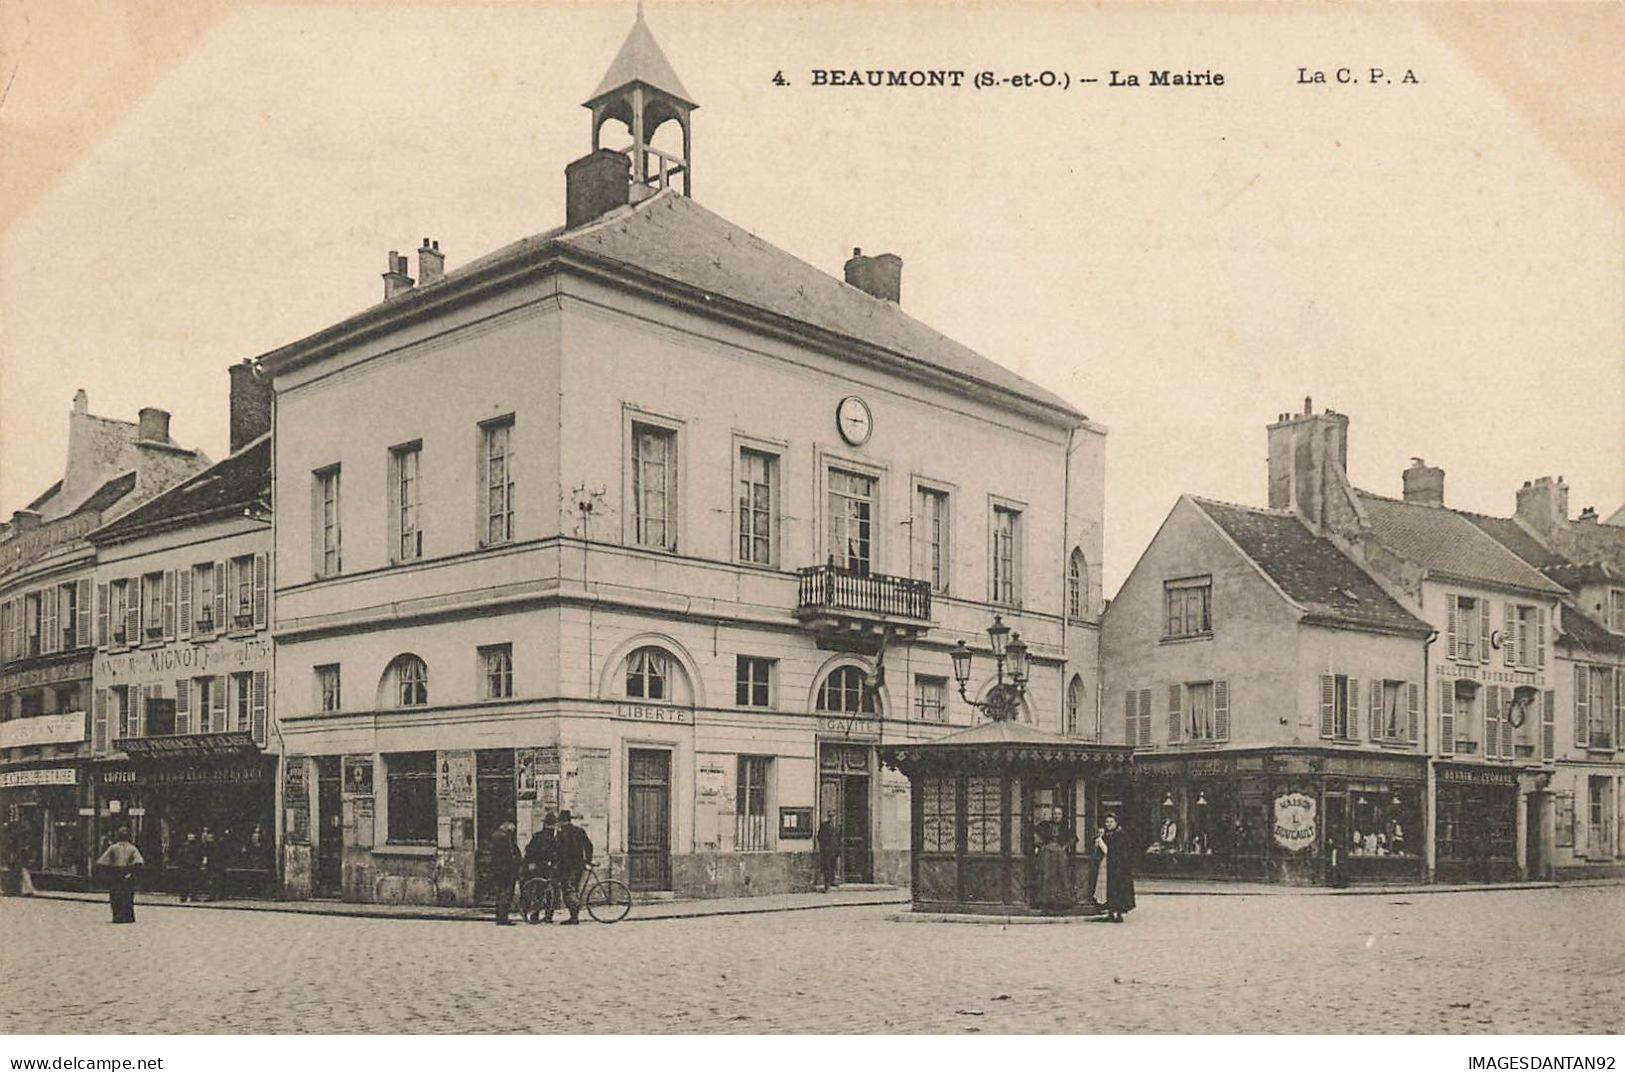 95 BEAUMONT SUR OISE #AS29781 LA MAIRIE - Beaumont Sur Oise